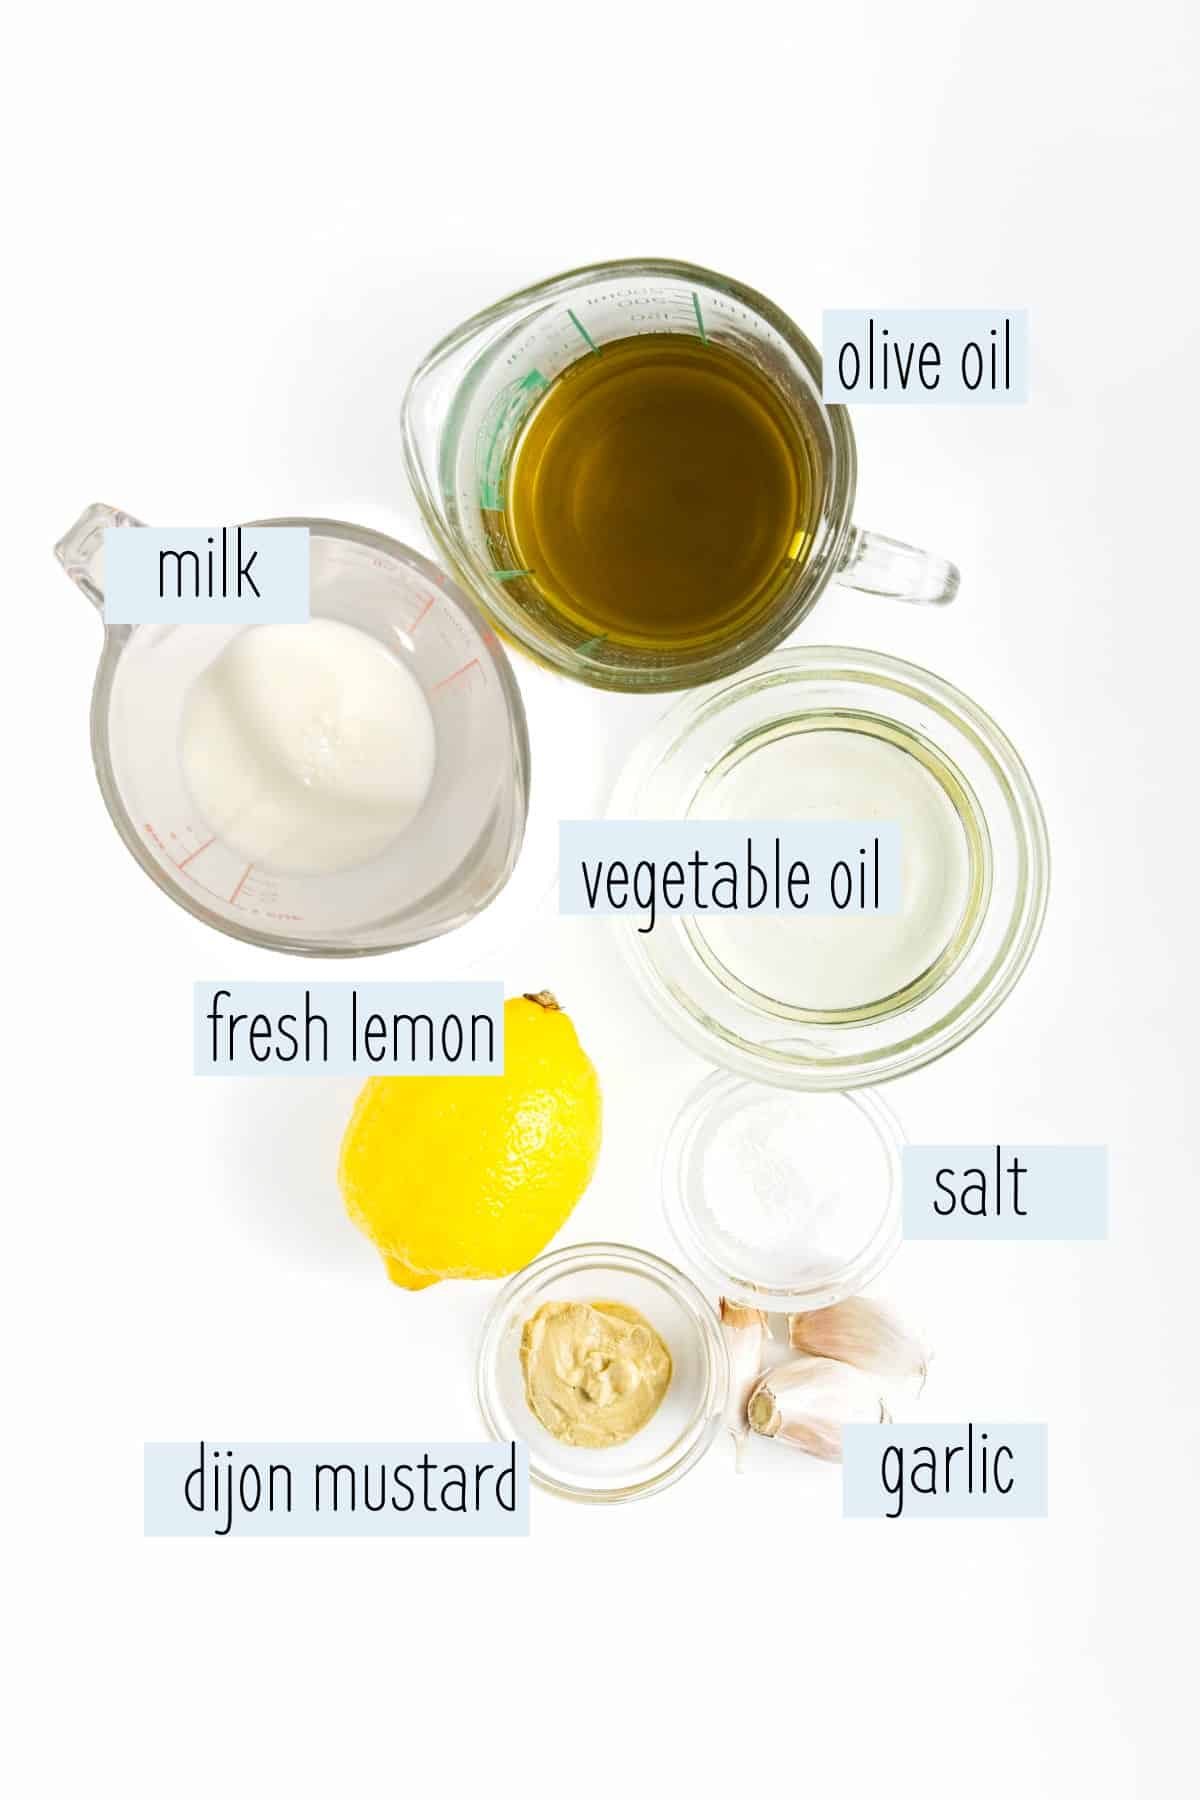 Milk, olive oil, garlic cloves, Dijon mustard and fresh lemon measured out of white surface.